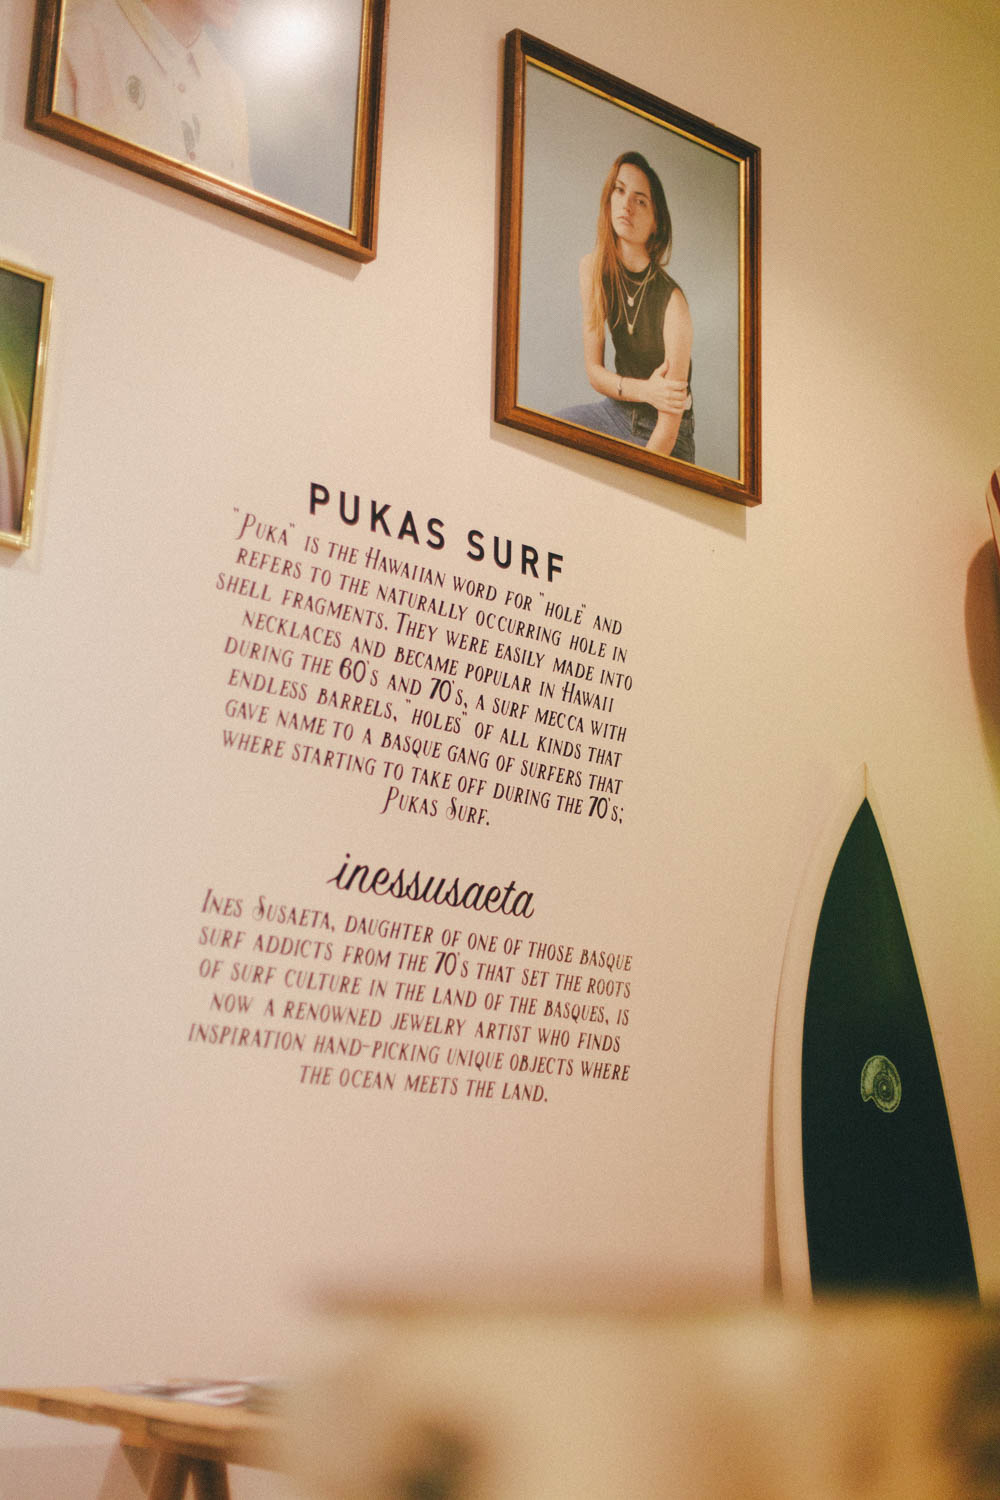 Pukas Surf x Ines Susaeta Pukas Surf Shop San Sebastian by Roke 18